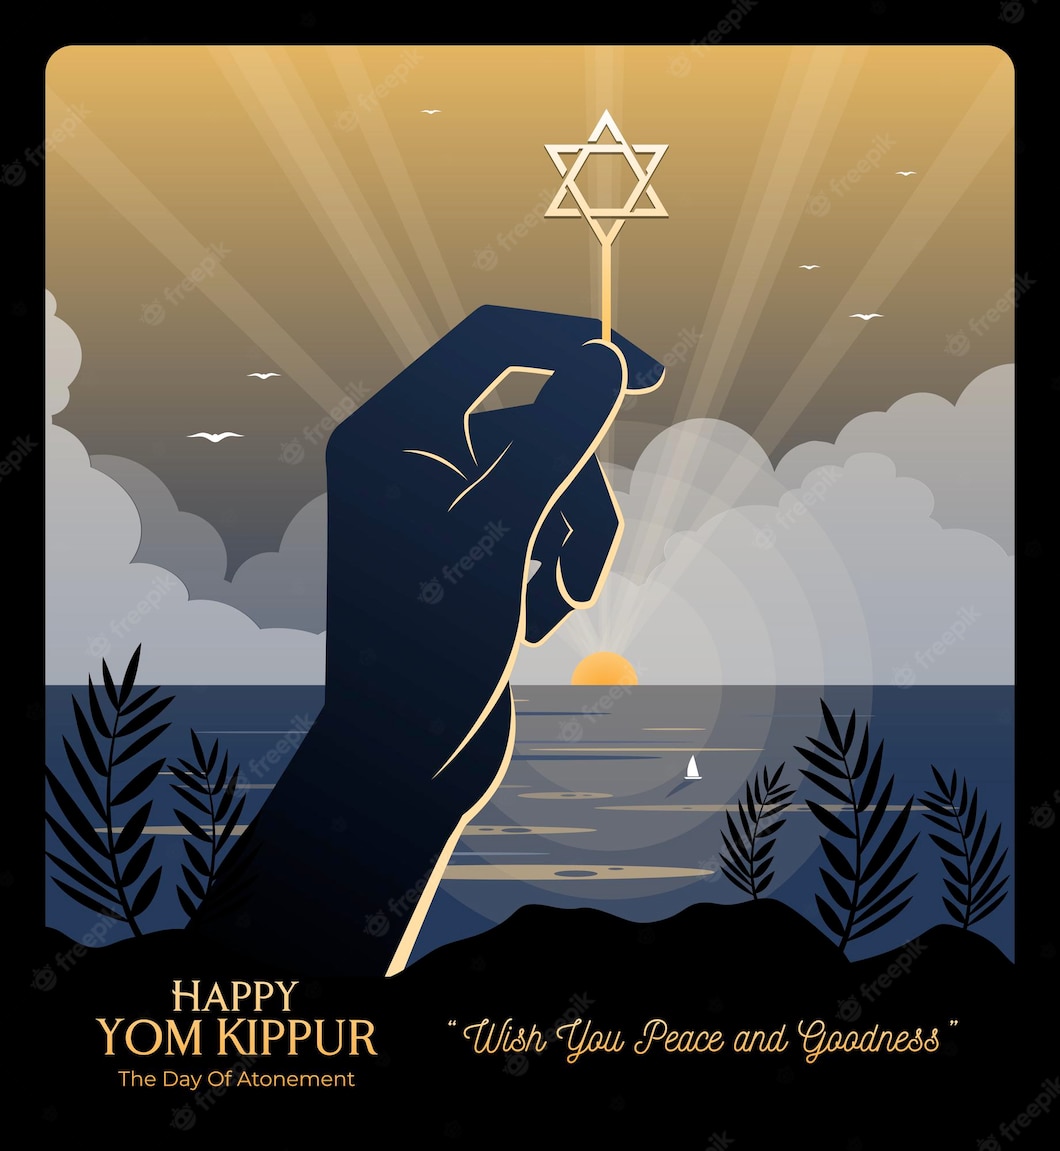 Yom Kippur 2022 च्या शुभेच्छा: हिब्रू शुभेच्छा, HD प्रतिमा, संदेश, ग्रीटिंग्ज, कोट्स, म्हणी, सावसी, तुमचे कुटुंब आणि मित्रांना शुभेच्छा